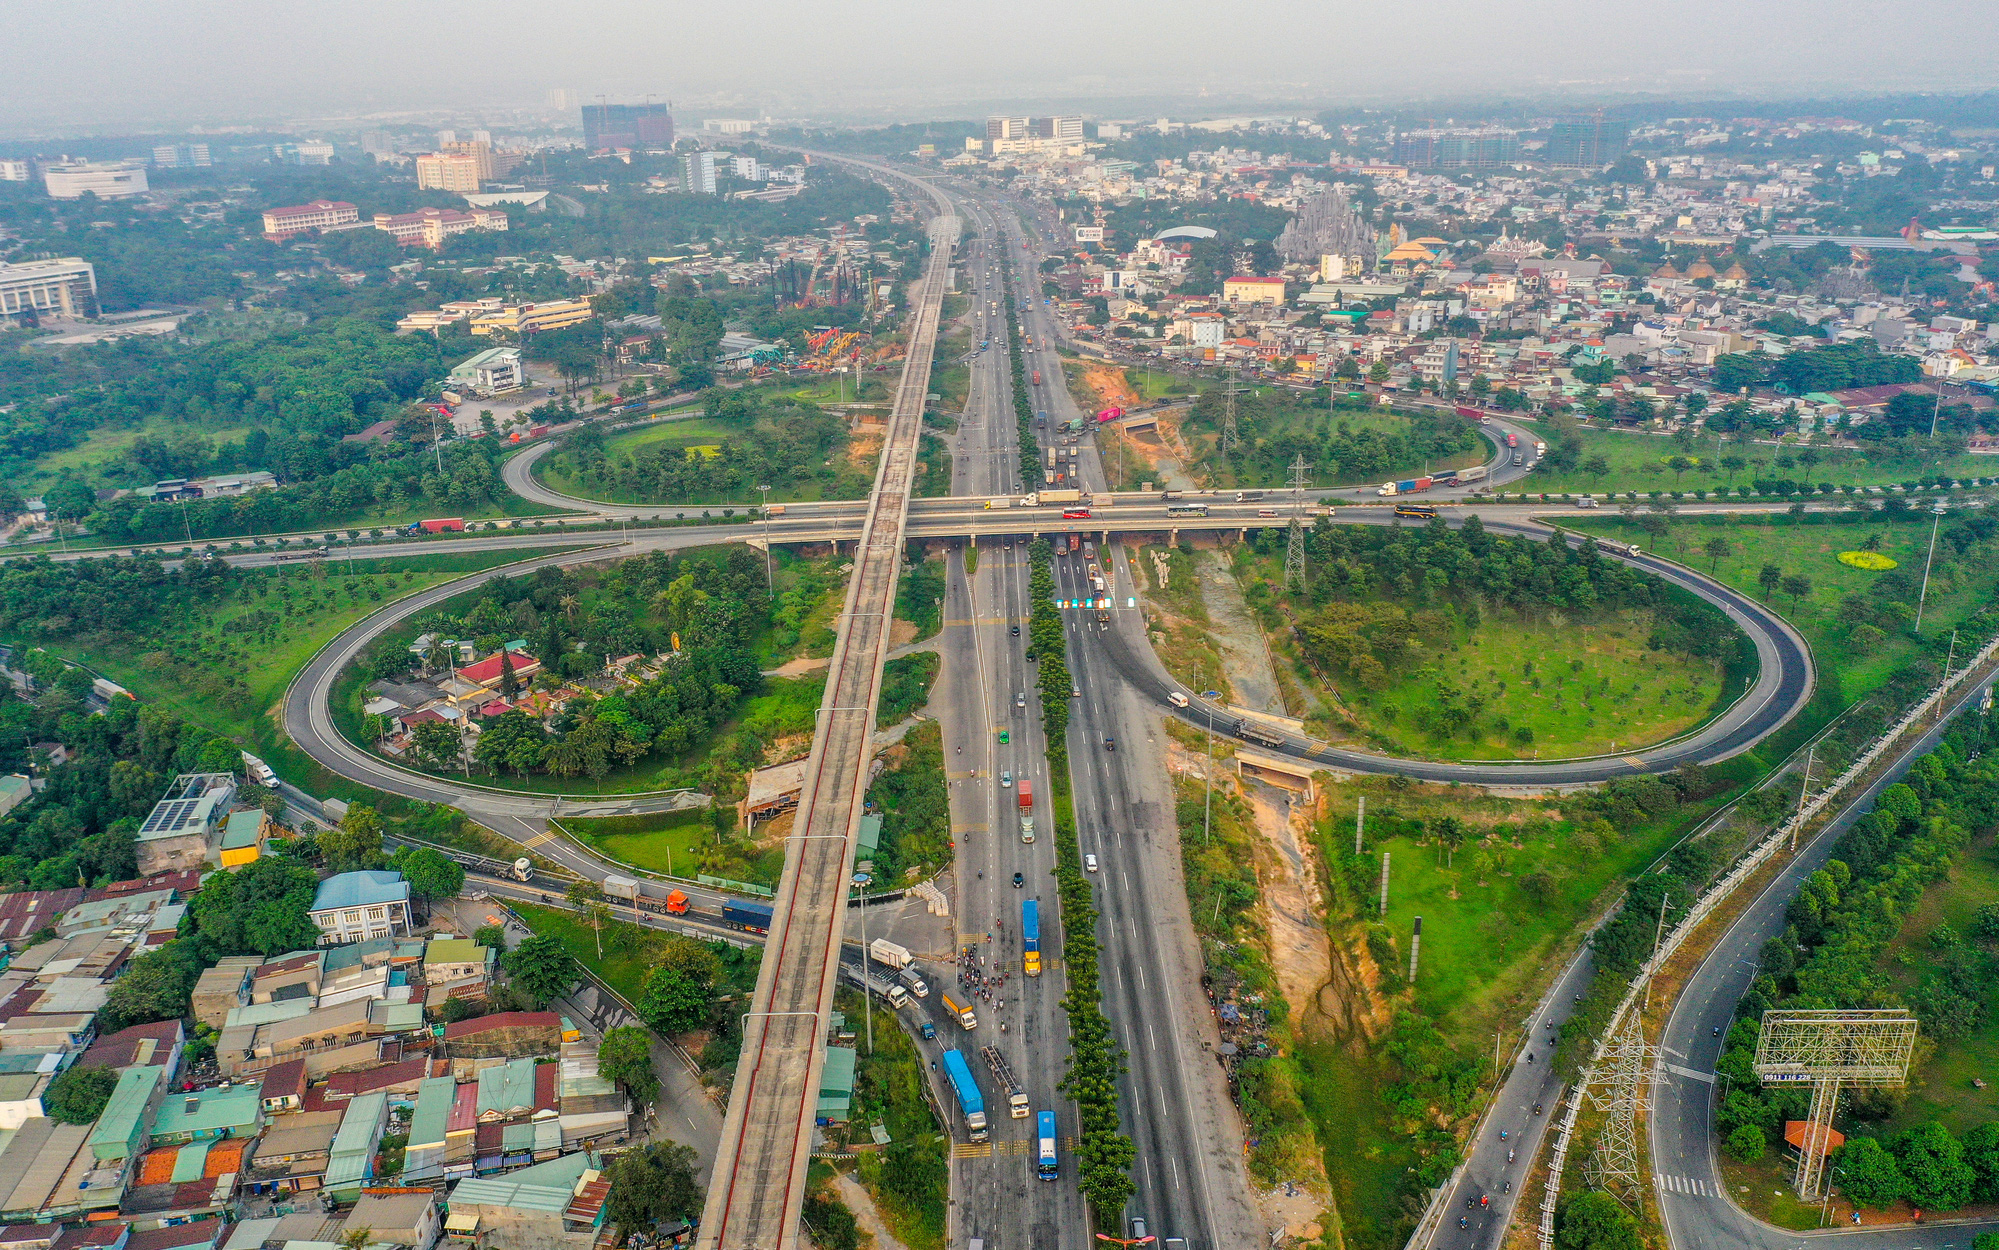 Giảm ùn tắc giao thông: TP.HCM sẽ xây 20 cây cầu và 90km đường bộ trong năm 2021